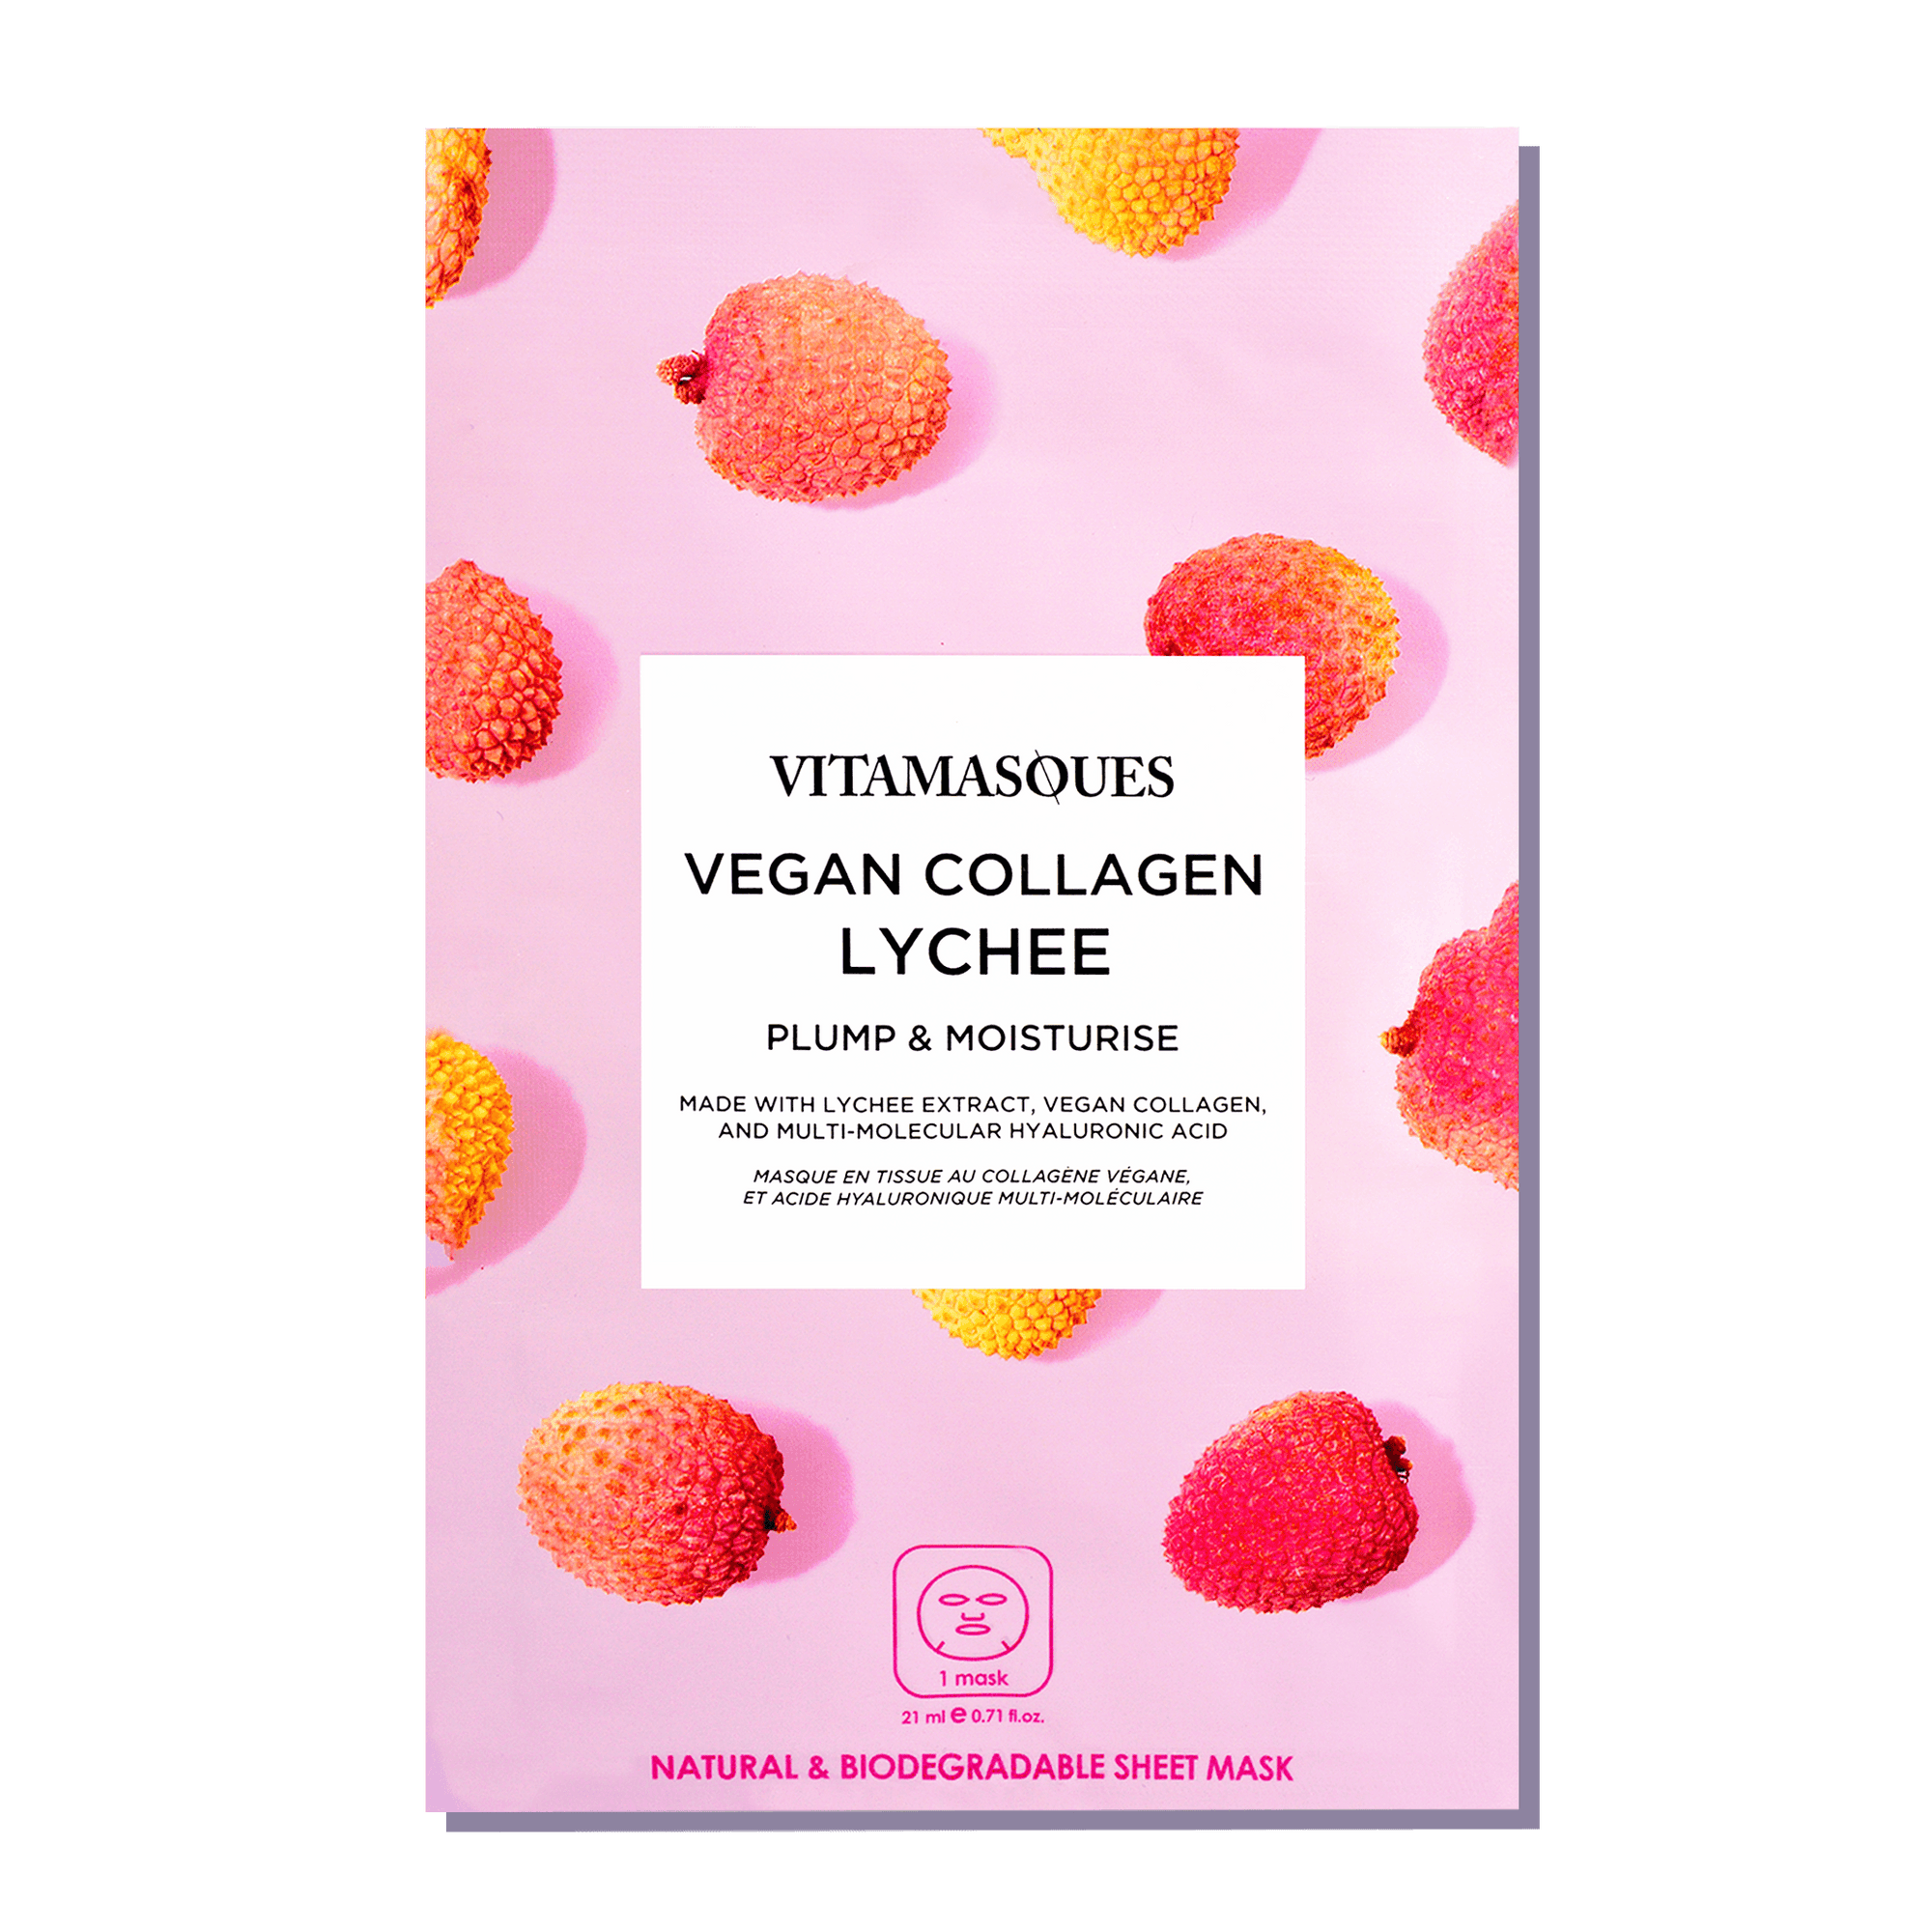 Vegan Collagen Lychee Face Sheet Mask - Vitamasques